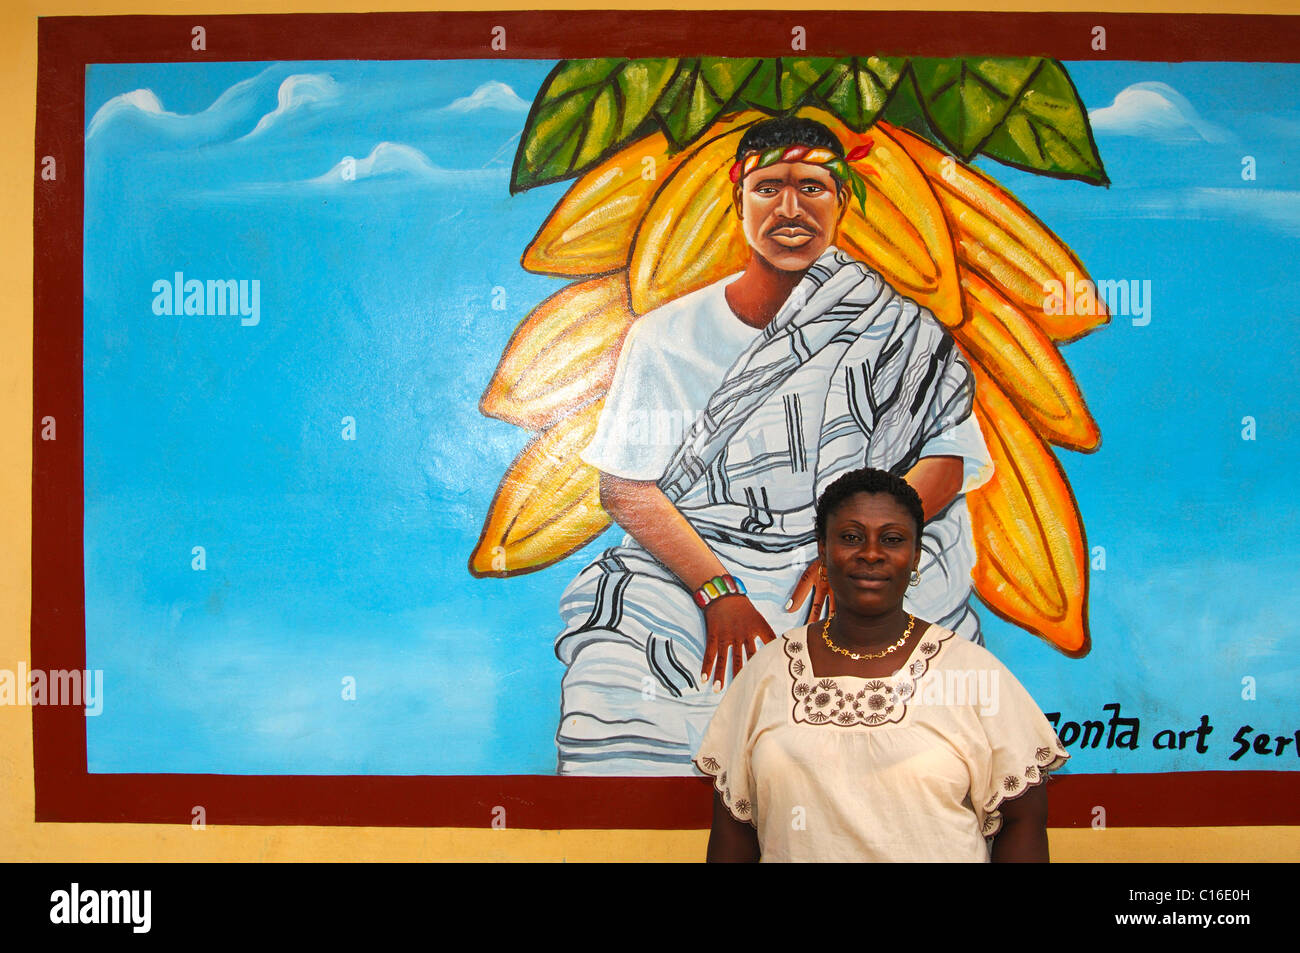 Fresque de Tetteh Quarshie, 1842-1892, fondateur de la culture du cacao au Ghana, avec son arrière-petite-fille, , Ghana, Afrique de l'Ouest Banque D'Images